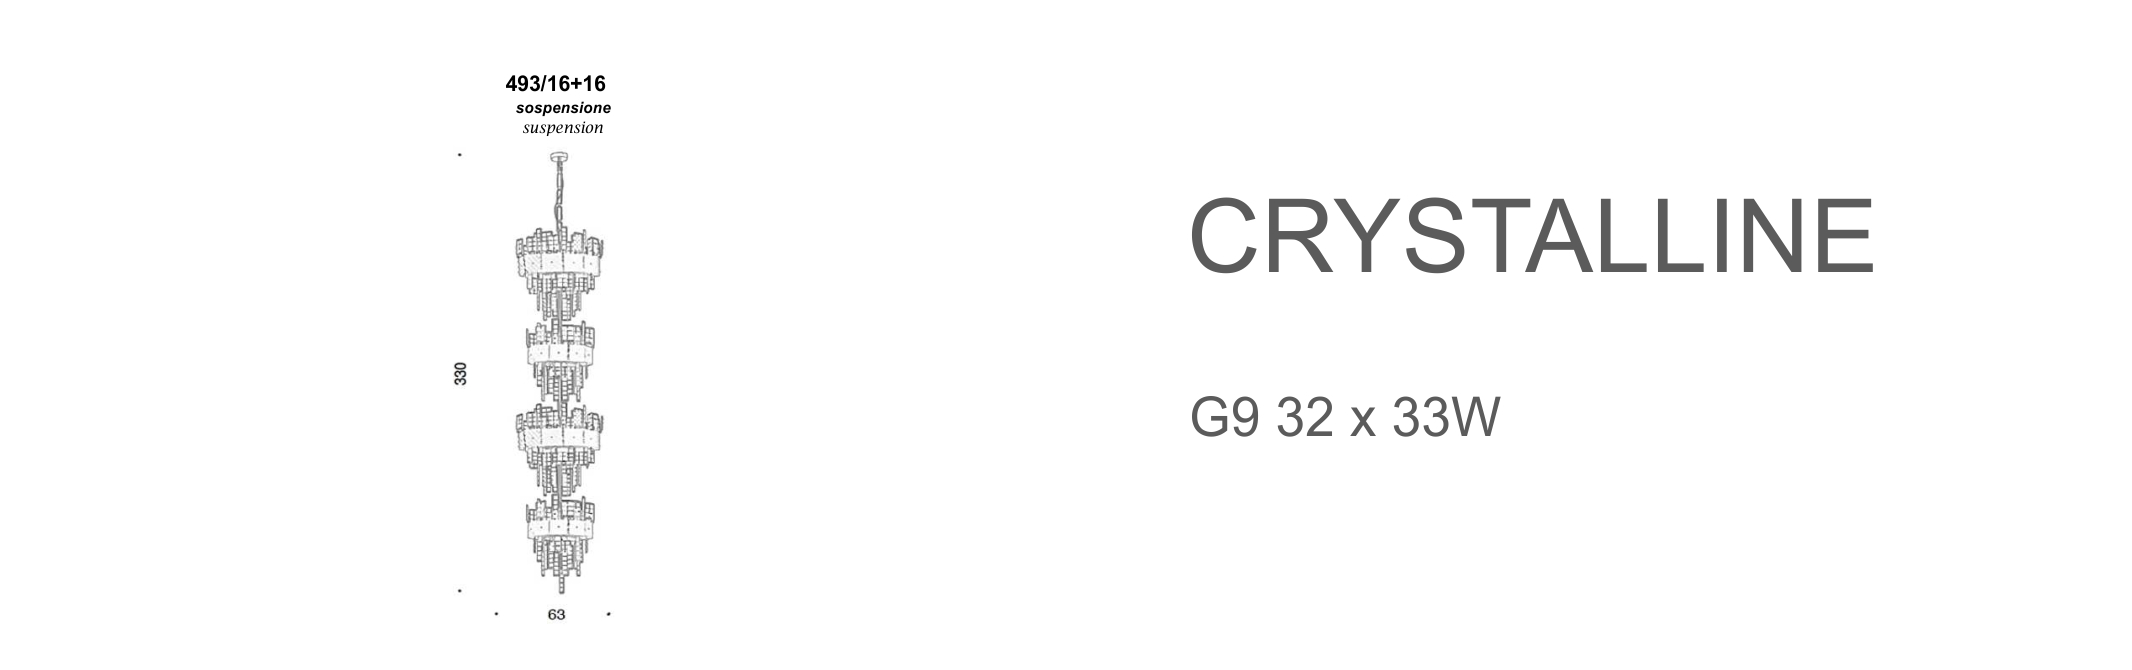 Crystalline 493/16+16